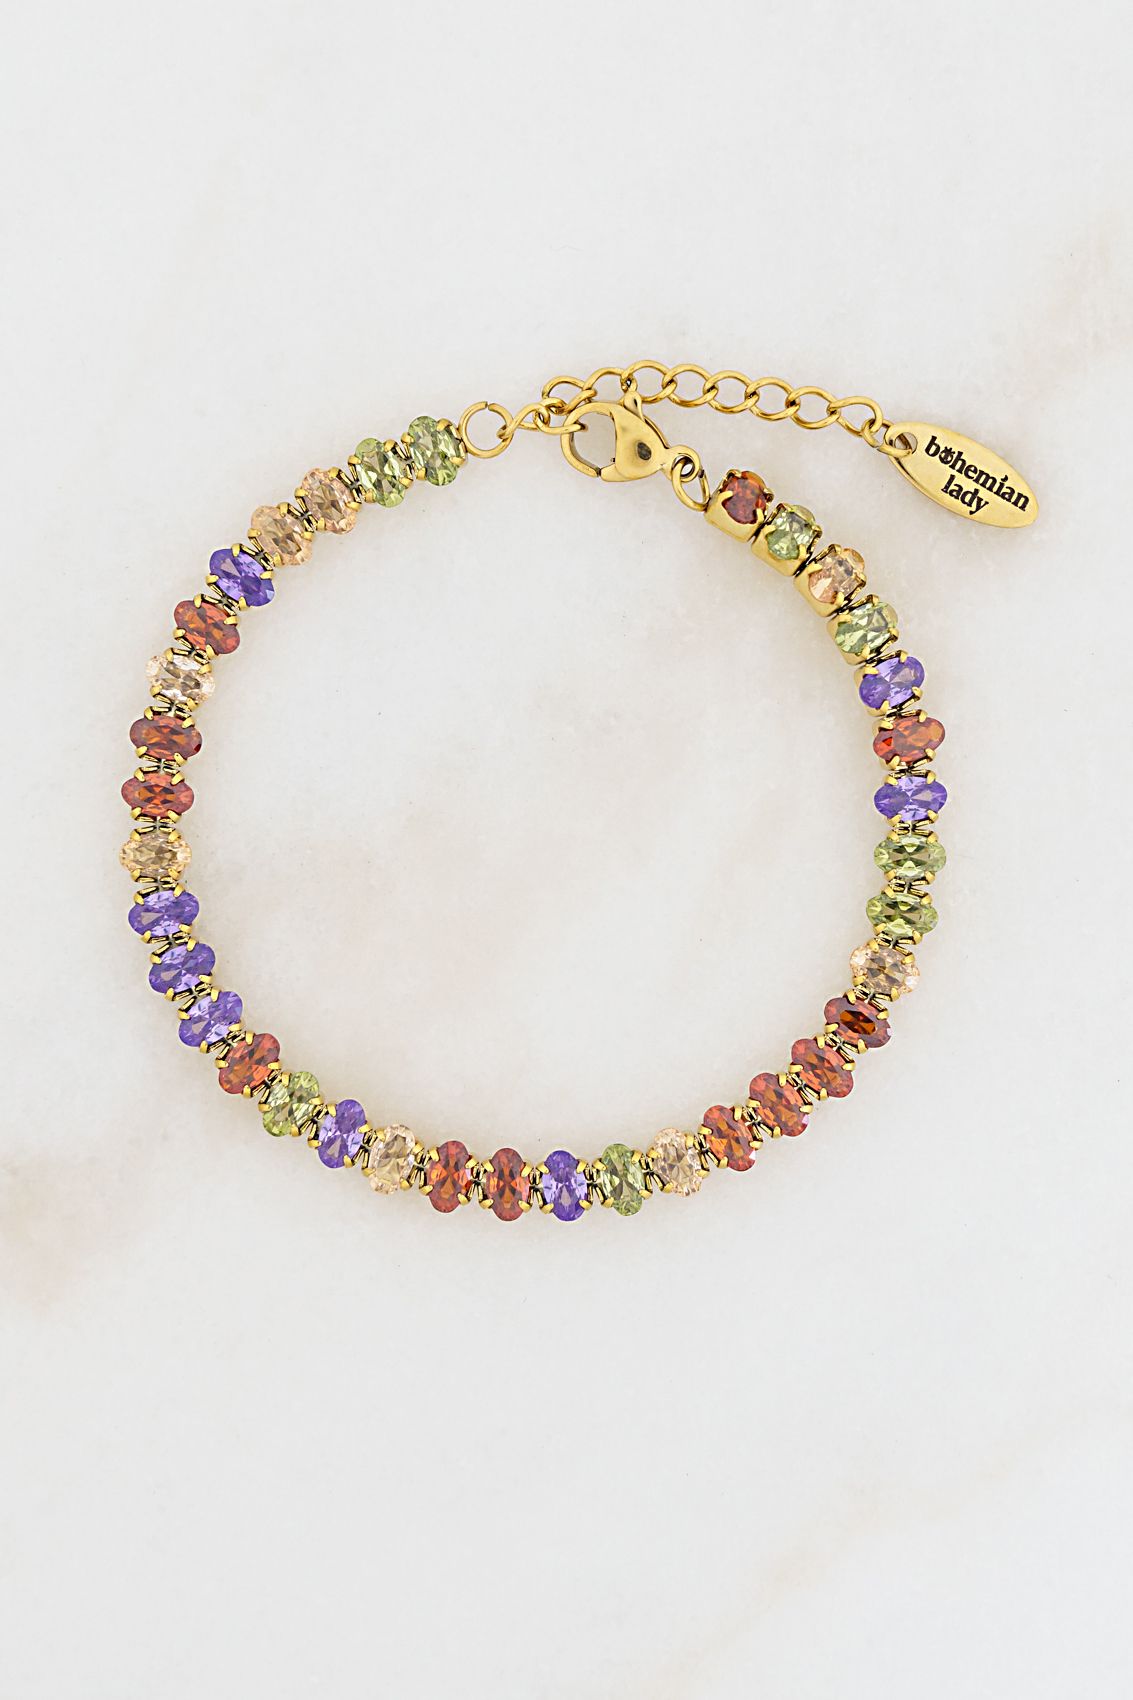 Colorful Crystal Bracelet